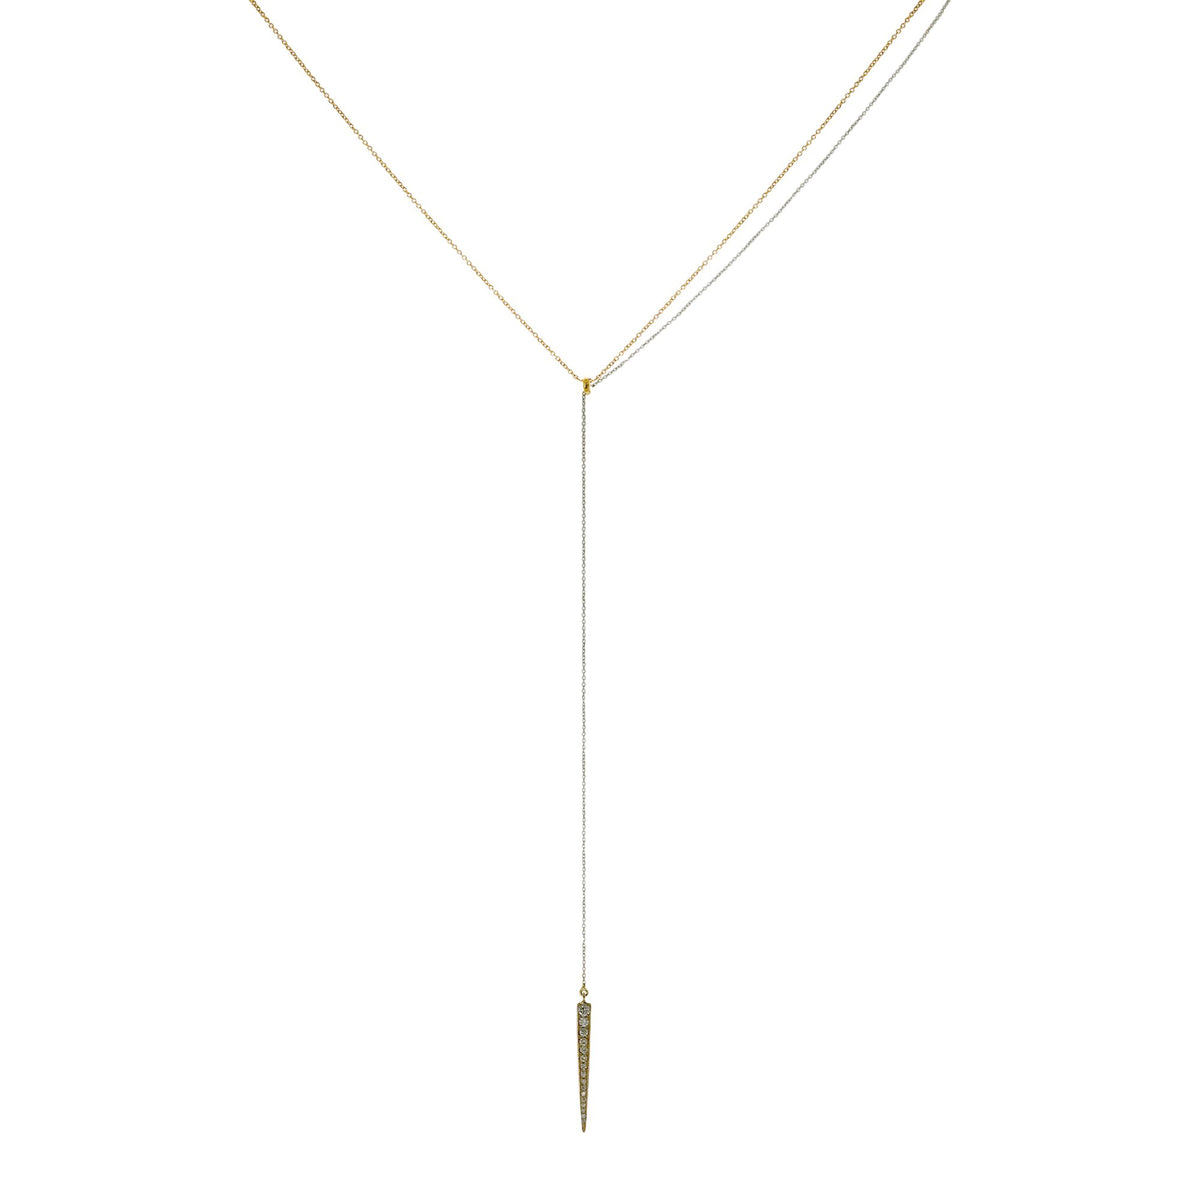 Pendulum necklace.